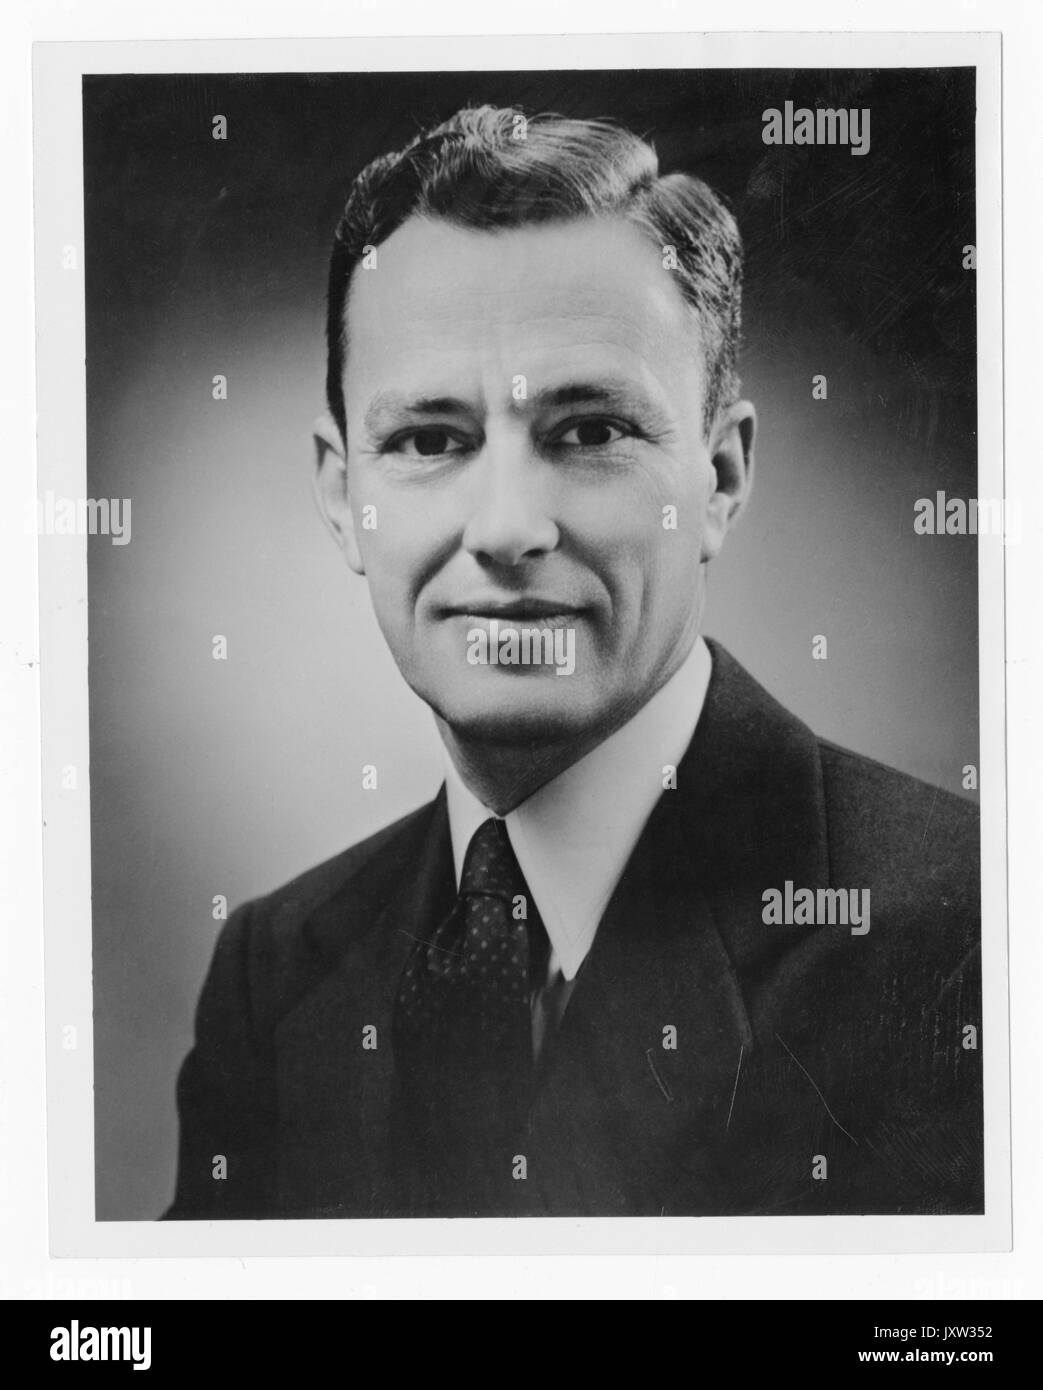 Cornelius kennady Kain, portrait Fotografie, Brustkorb, Gesicht, c 40 Jahre, 1950. Stockfoto